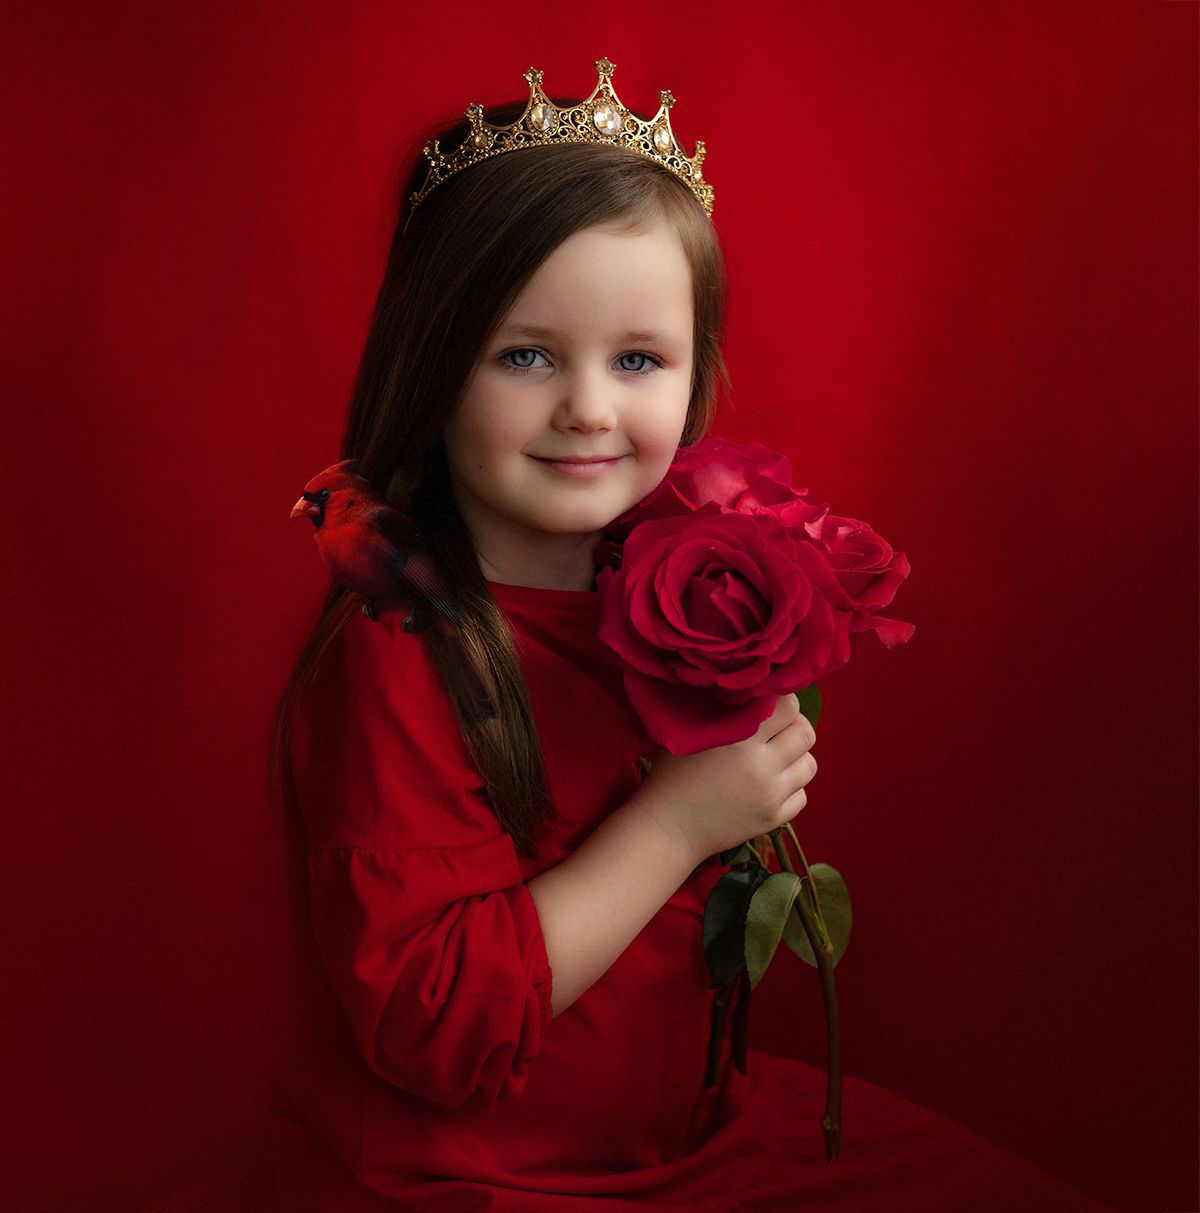 розы, птица, fineart, дети, девочка, красный, корона, принцесса, портрет, девочка, Тимохина Юлия